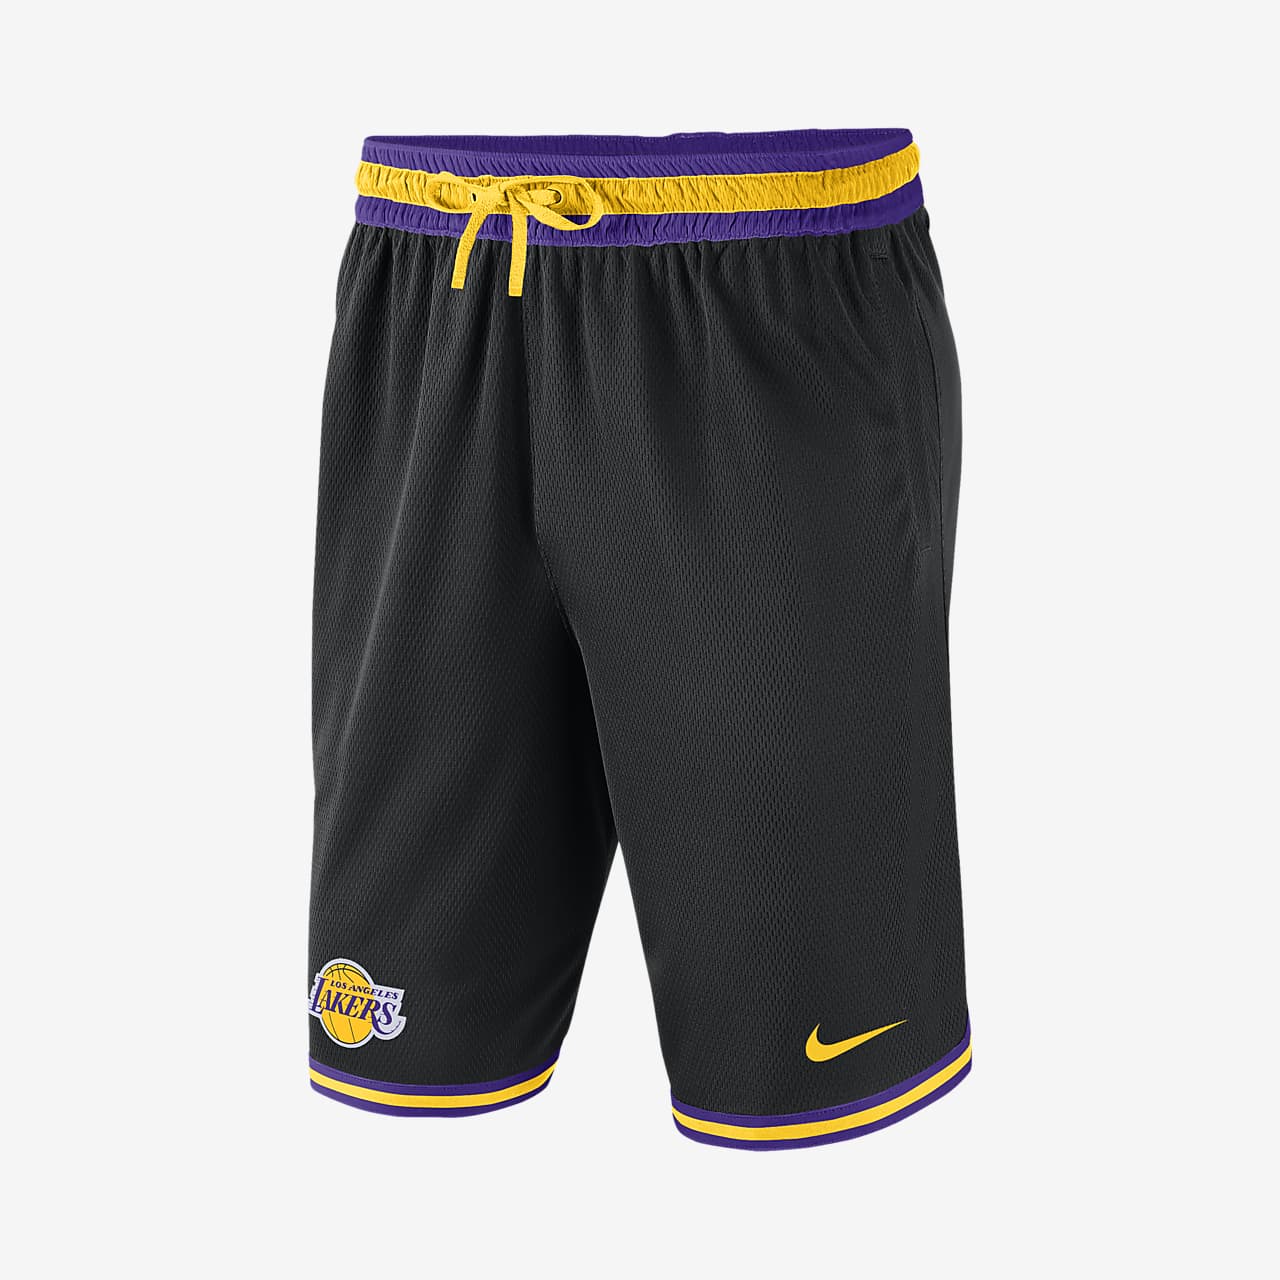 洛杉矶湖人队 Nike NBA 男子短裤